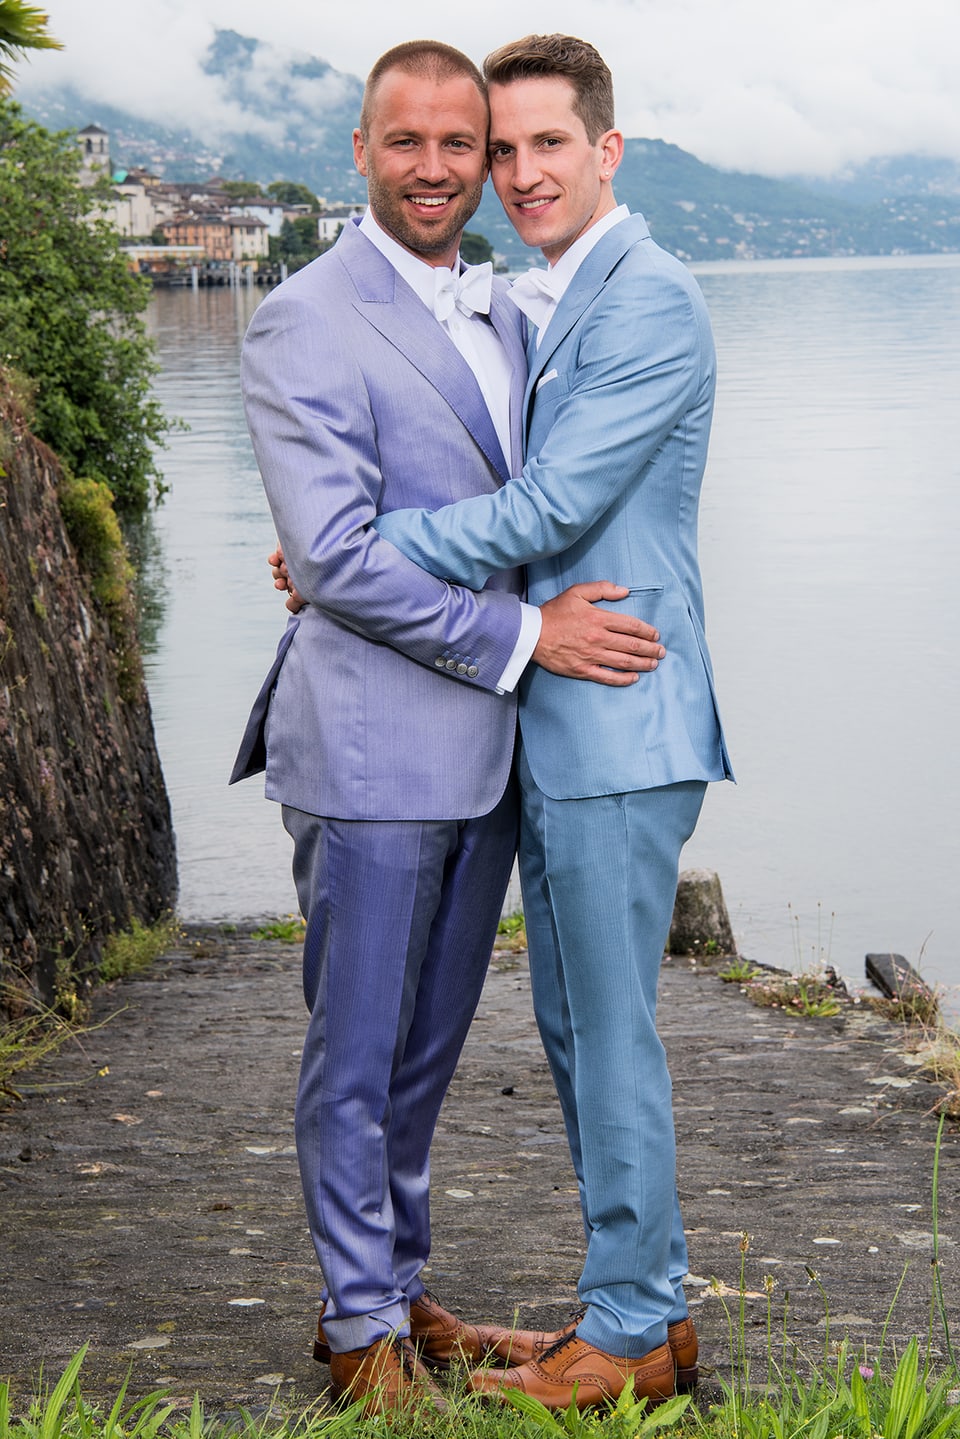 Jonny Fischer und Ehemann total, umarmen sich. Beide im blauen Smoking mit weisser Fliege. 